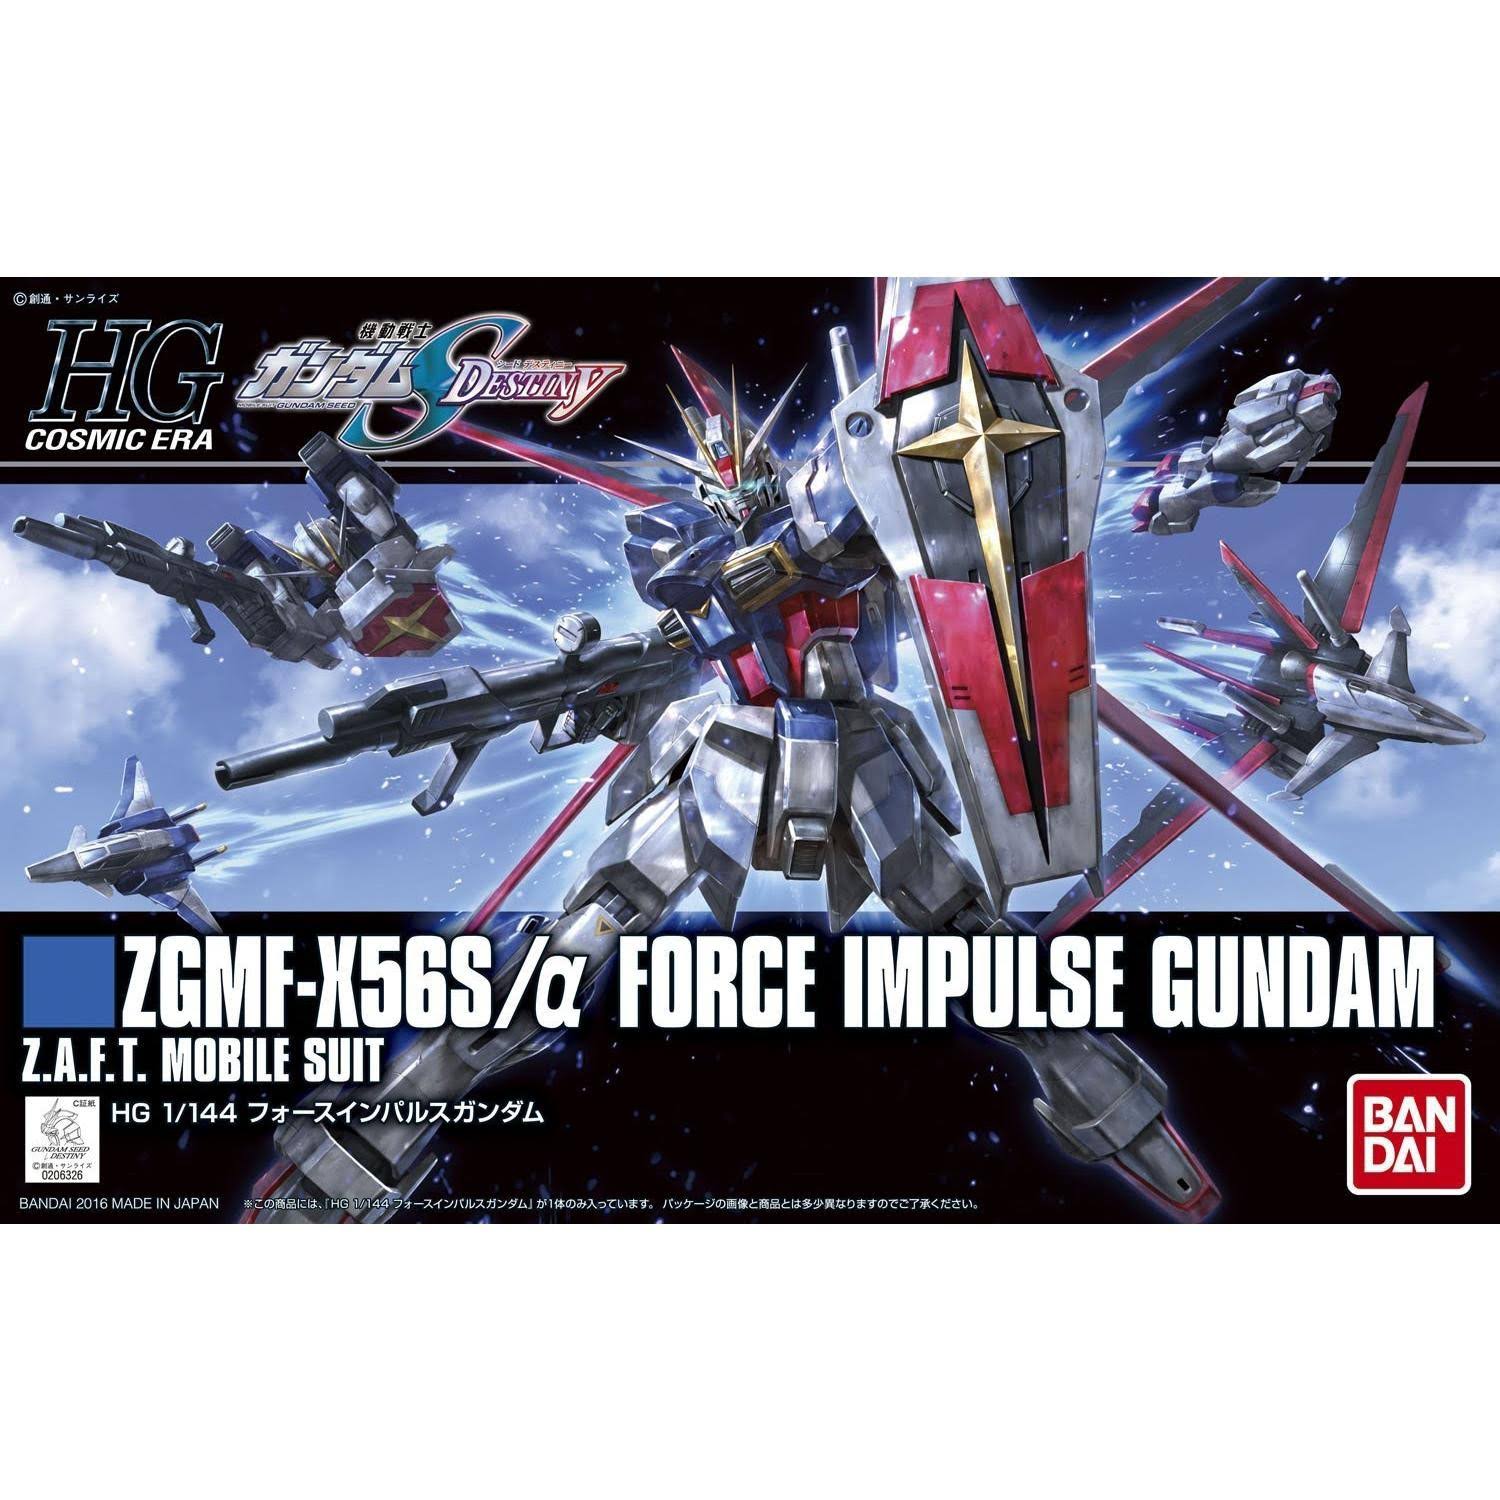 Bandai 1/144 HGCE Force Impulse Gundam